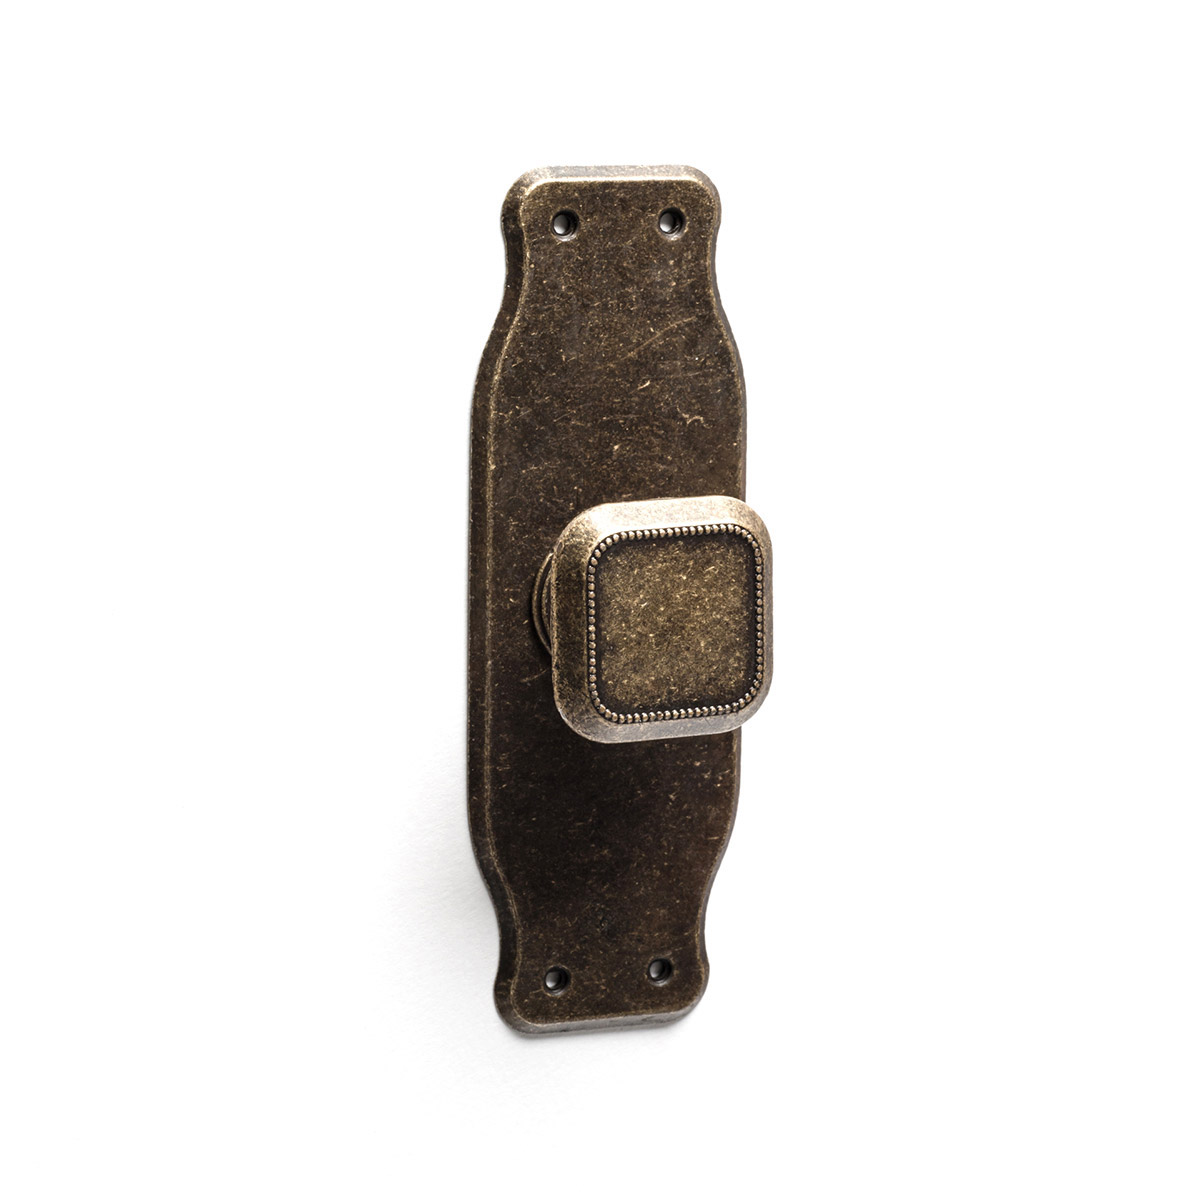 Bouton de plaque en vieux cuir zamak, dimensions: 110x38x24mm